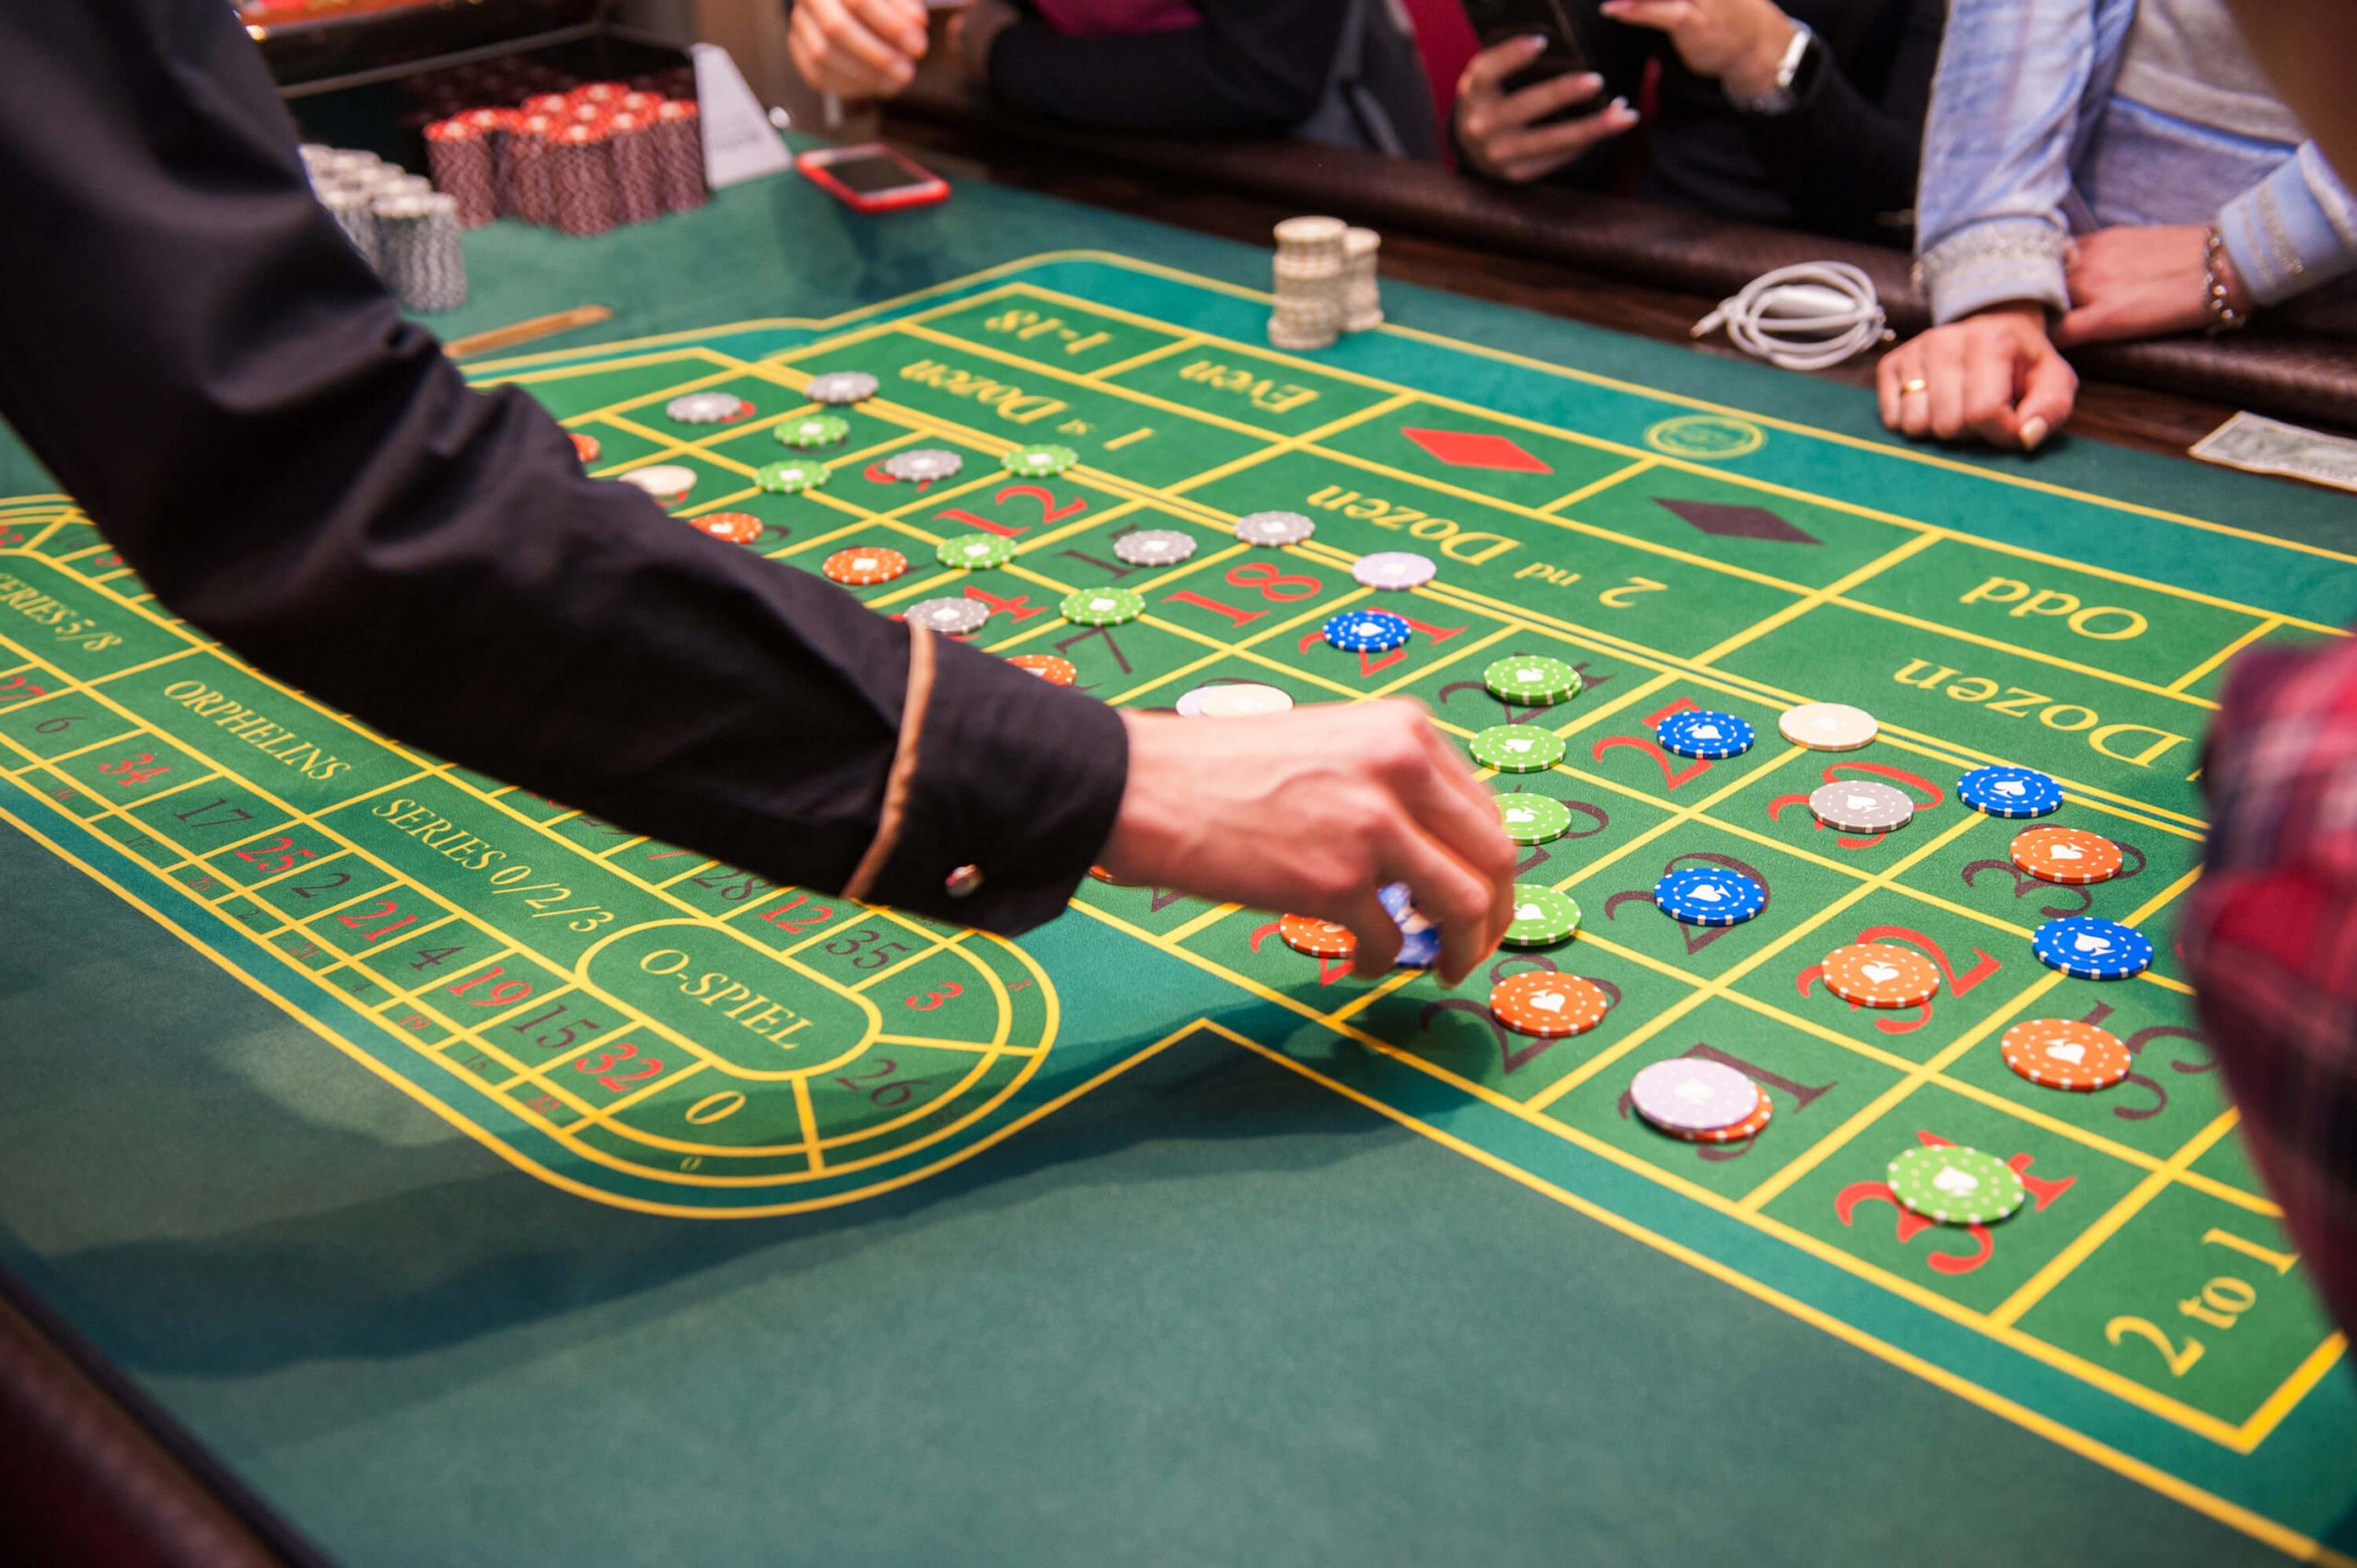 5 måter å være trygg og sikker når du spiller på casino på nett